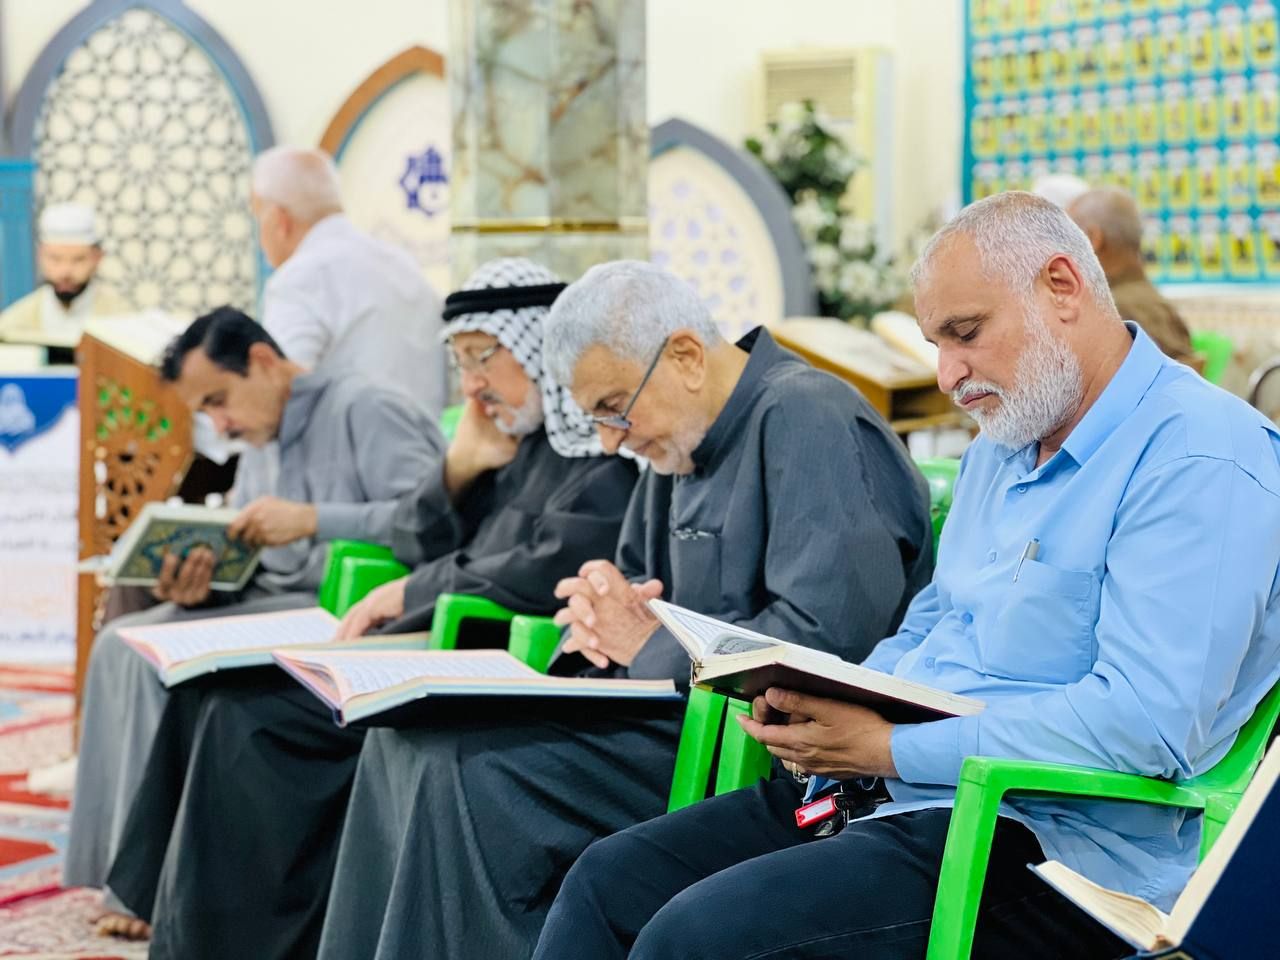 أكثر من (65) ختمة قرآنية رمضانية يقيمها المَجمع العلمي للقرآن الكريم في بغداد